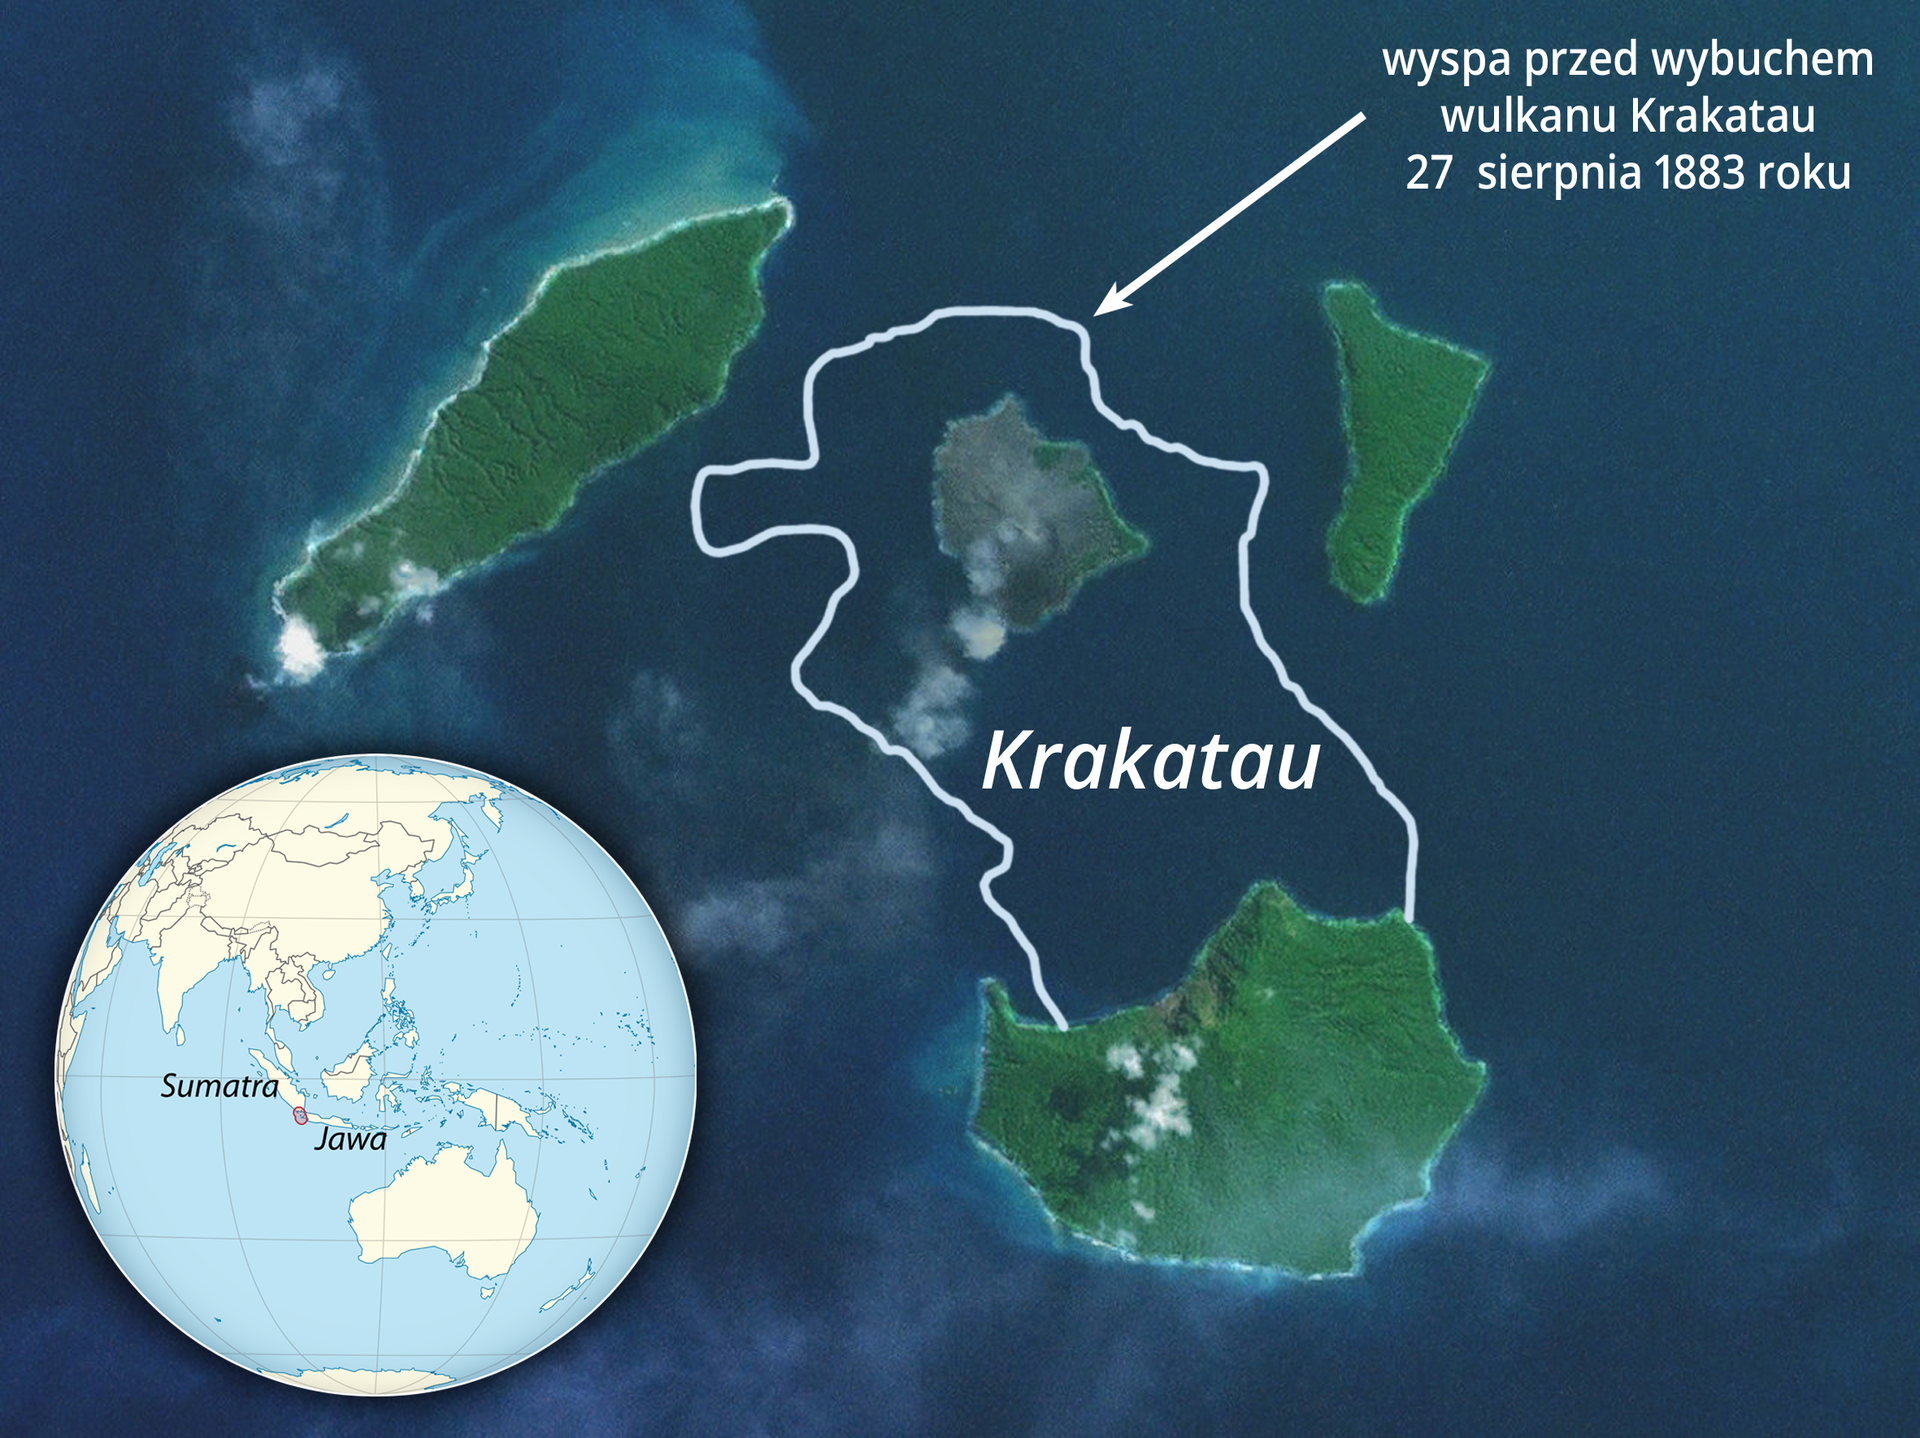 Zdjęcie satelitarne. Ciemnogranatowe morze. Kilka wysp porośniętych roślinnością. Biały kontur obejmujący dwie odległe wyspy. To kształt wyspy przed wybuchem wulkanu Krakatau. W lewym dolnym rogu miniatura globu z zaznaczoną lokalizacją sfotografowanego miejsca – Sumatra, Jawa.